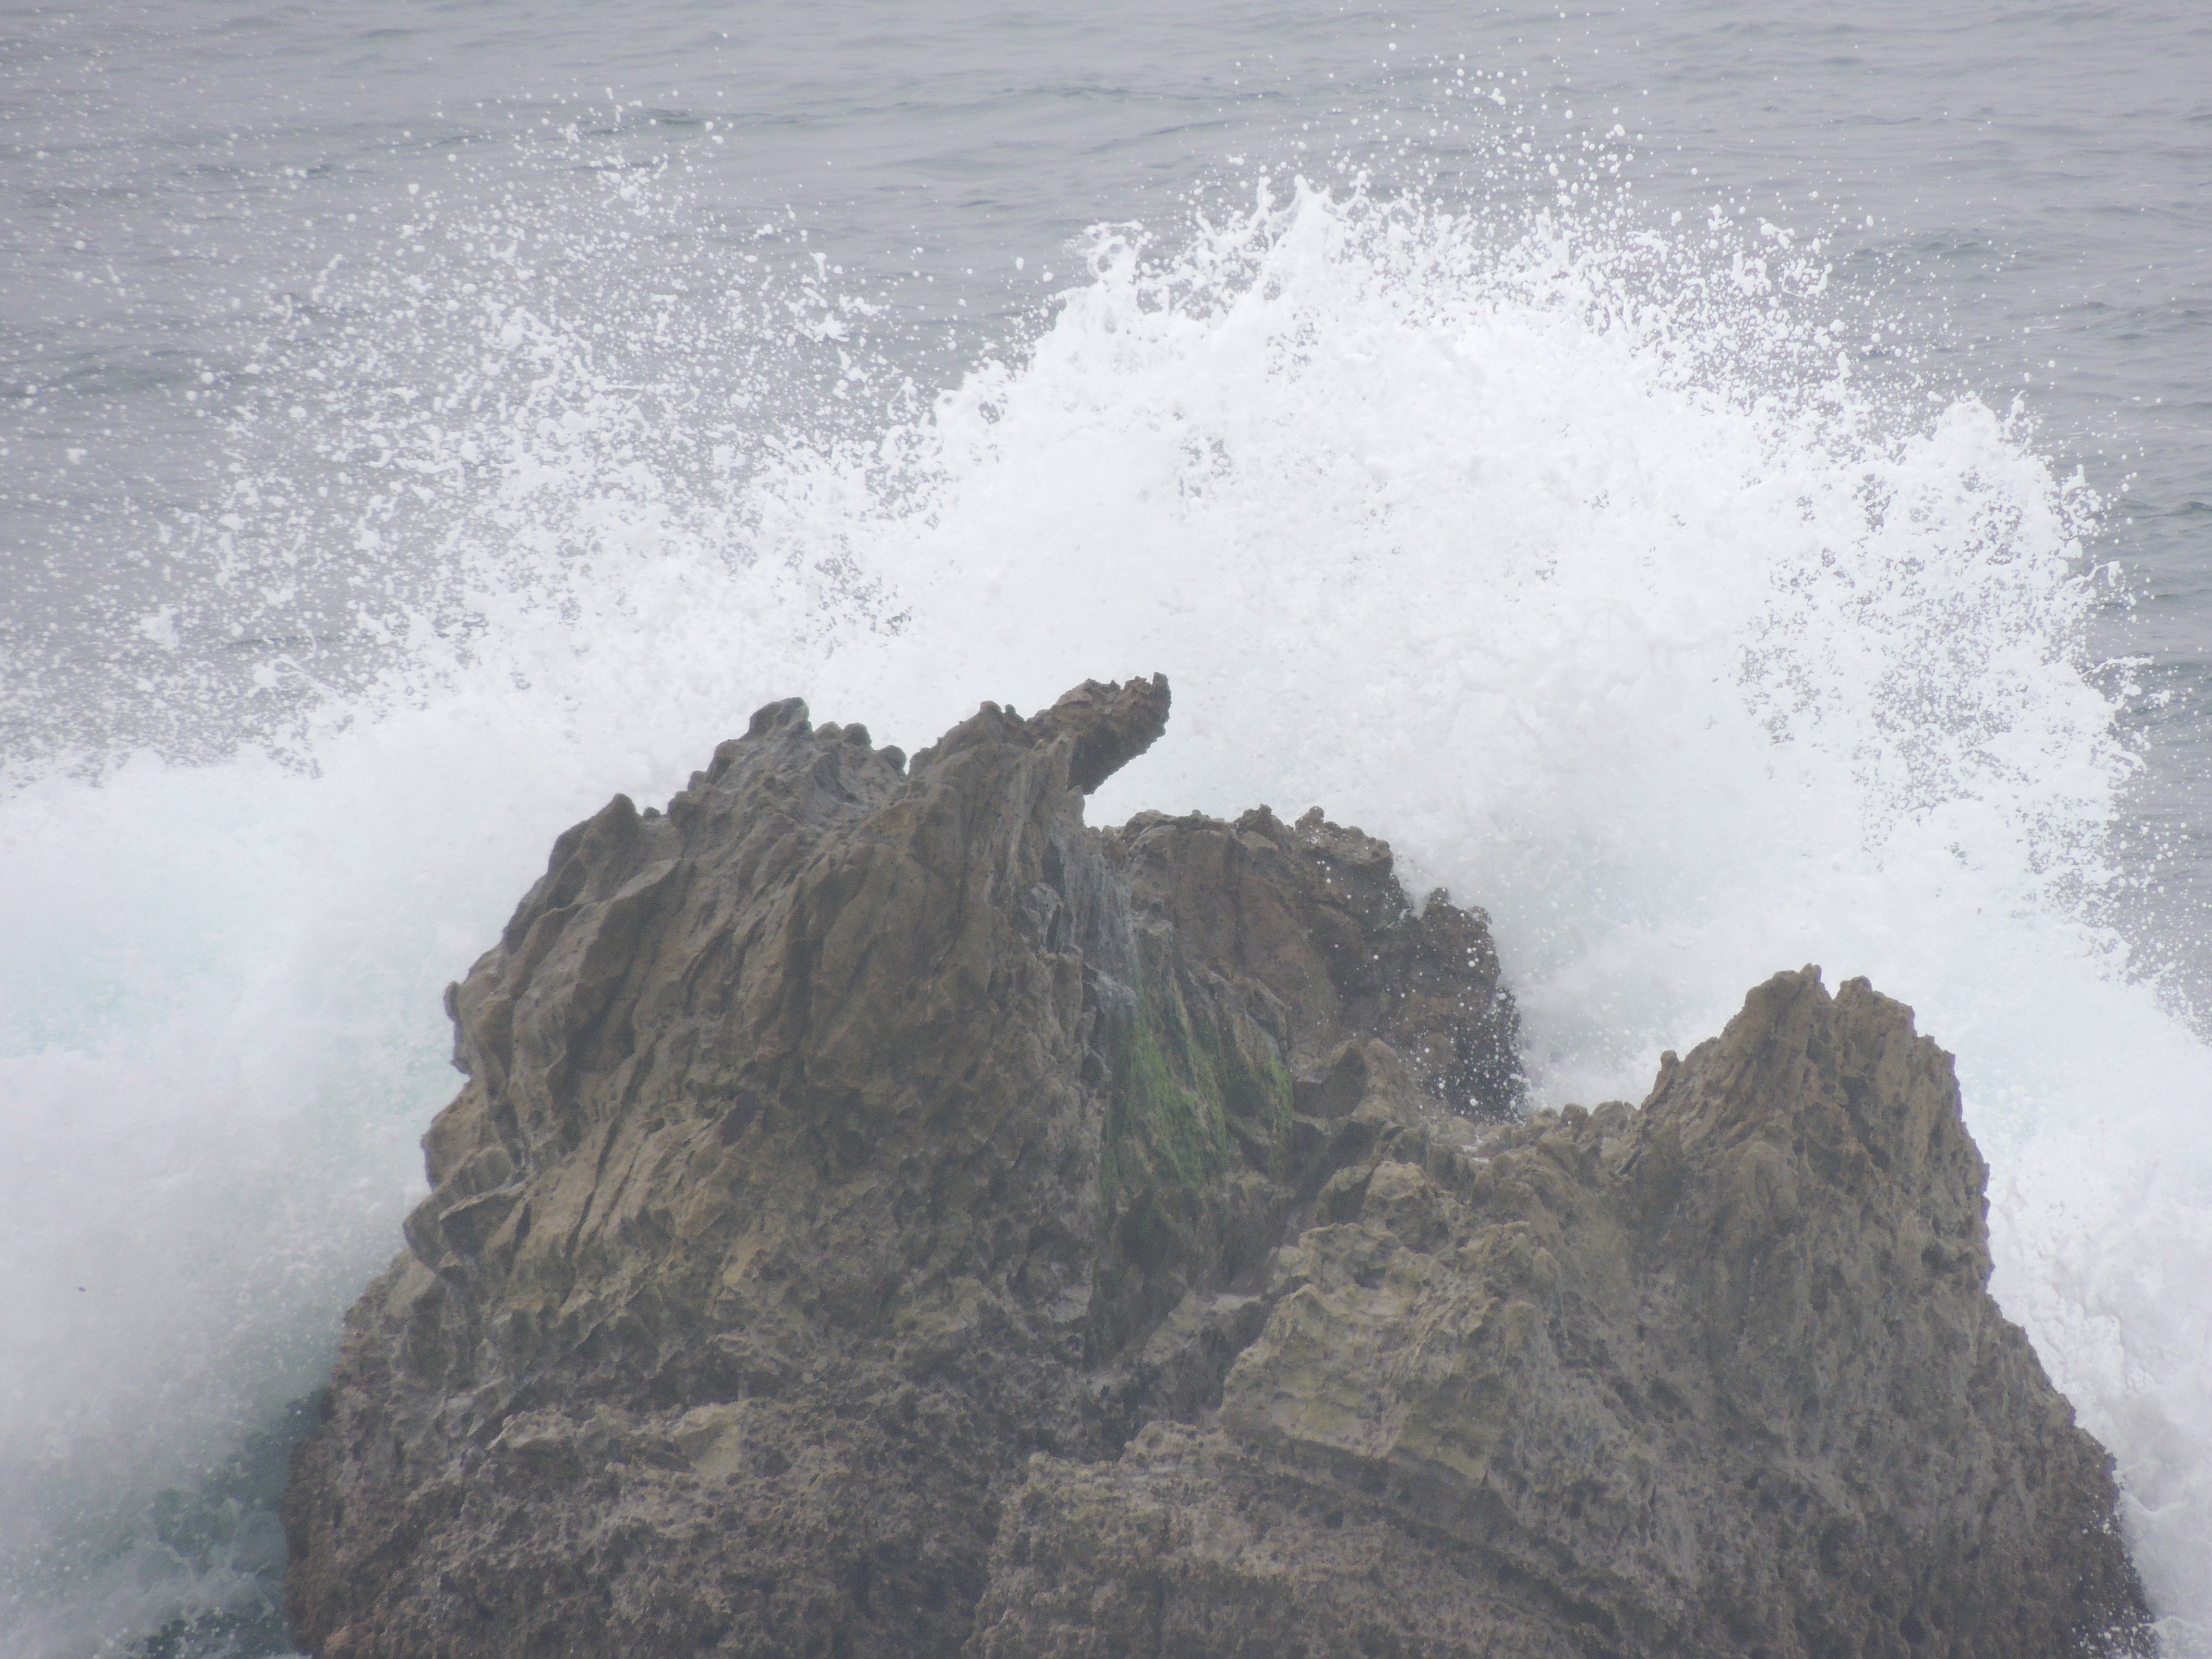 Crashing Wave, Laguna Beach, California